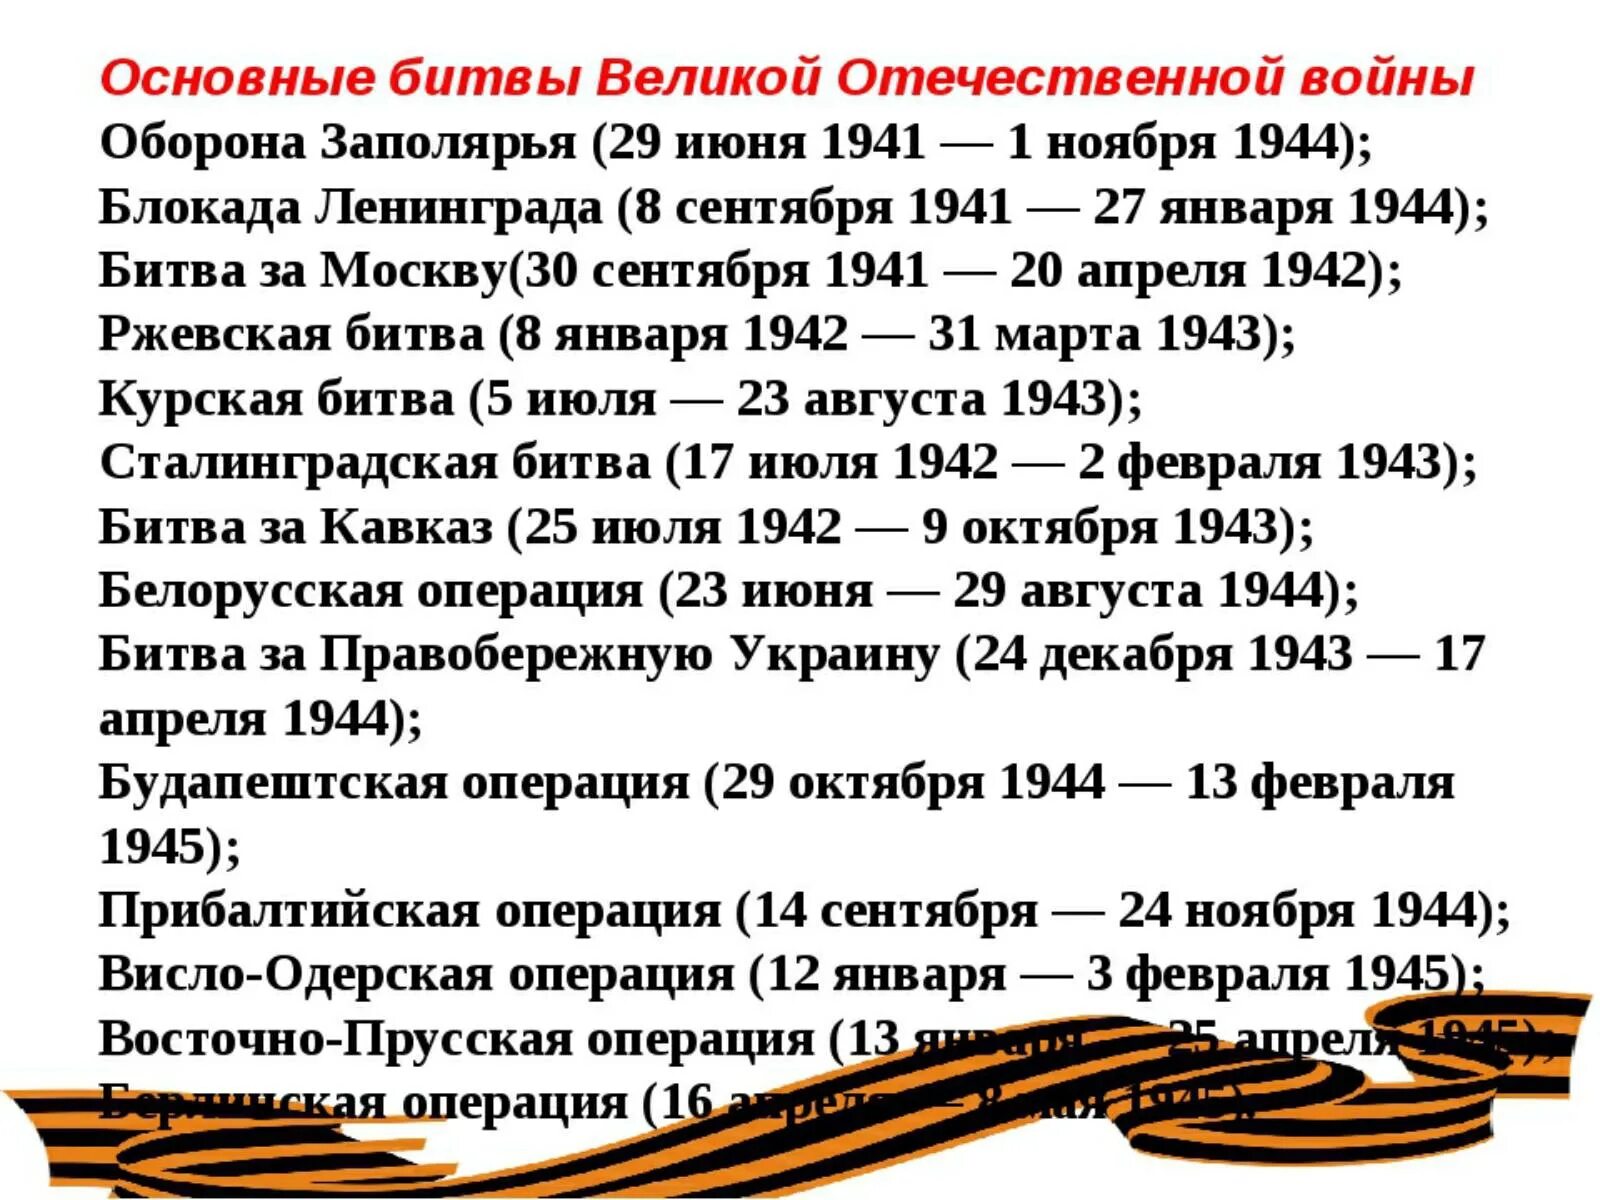 Информация о войне 1945. Важнейшие битвы ВОВ даты. Даты крупных сражений Великой Отечественной войны. Даты Великой Отечественной войны основные 1945.